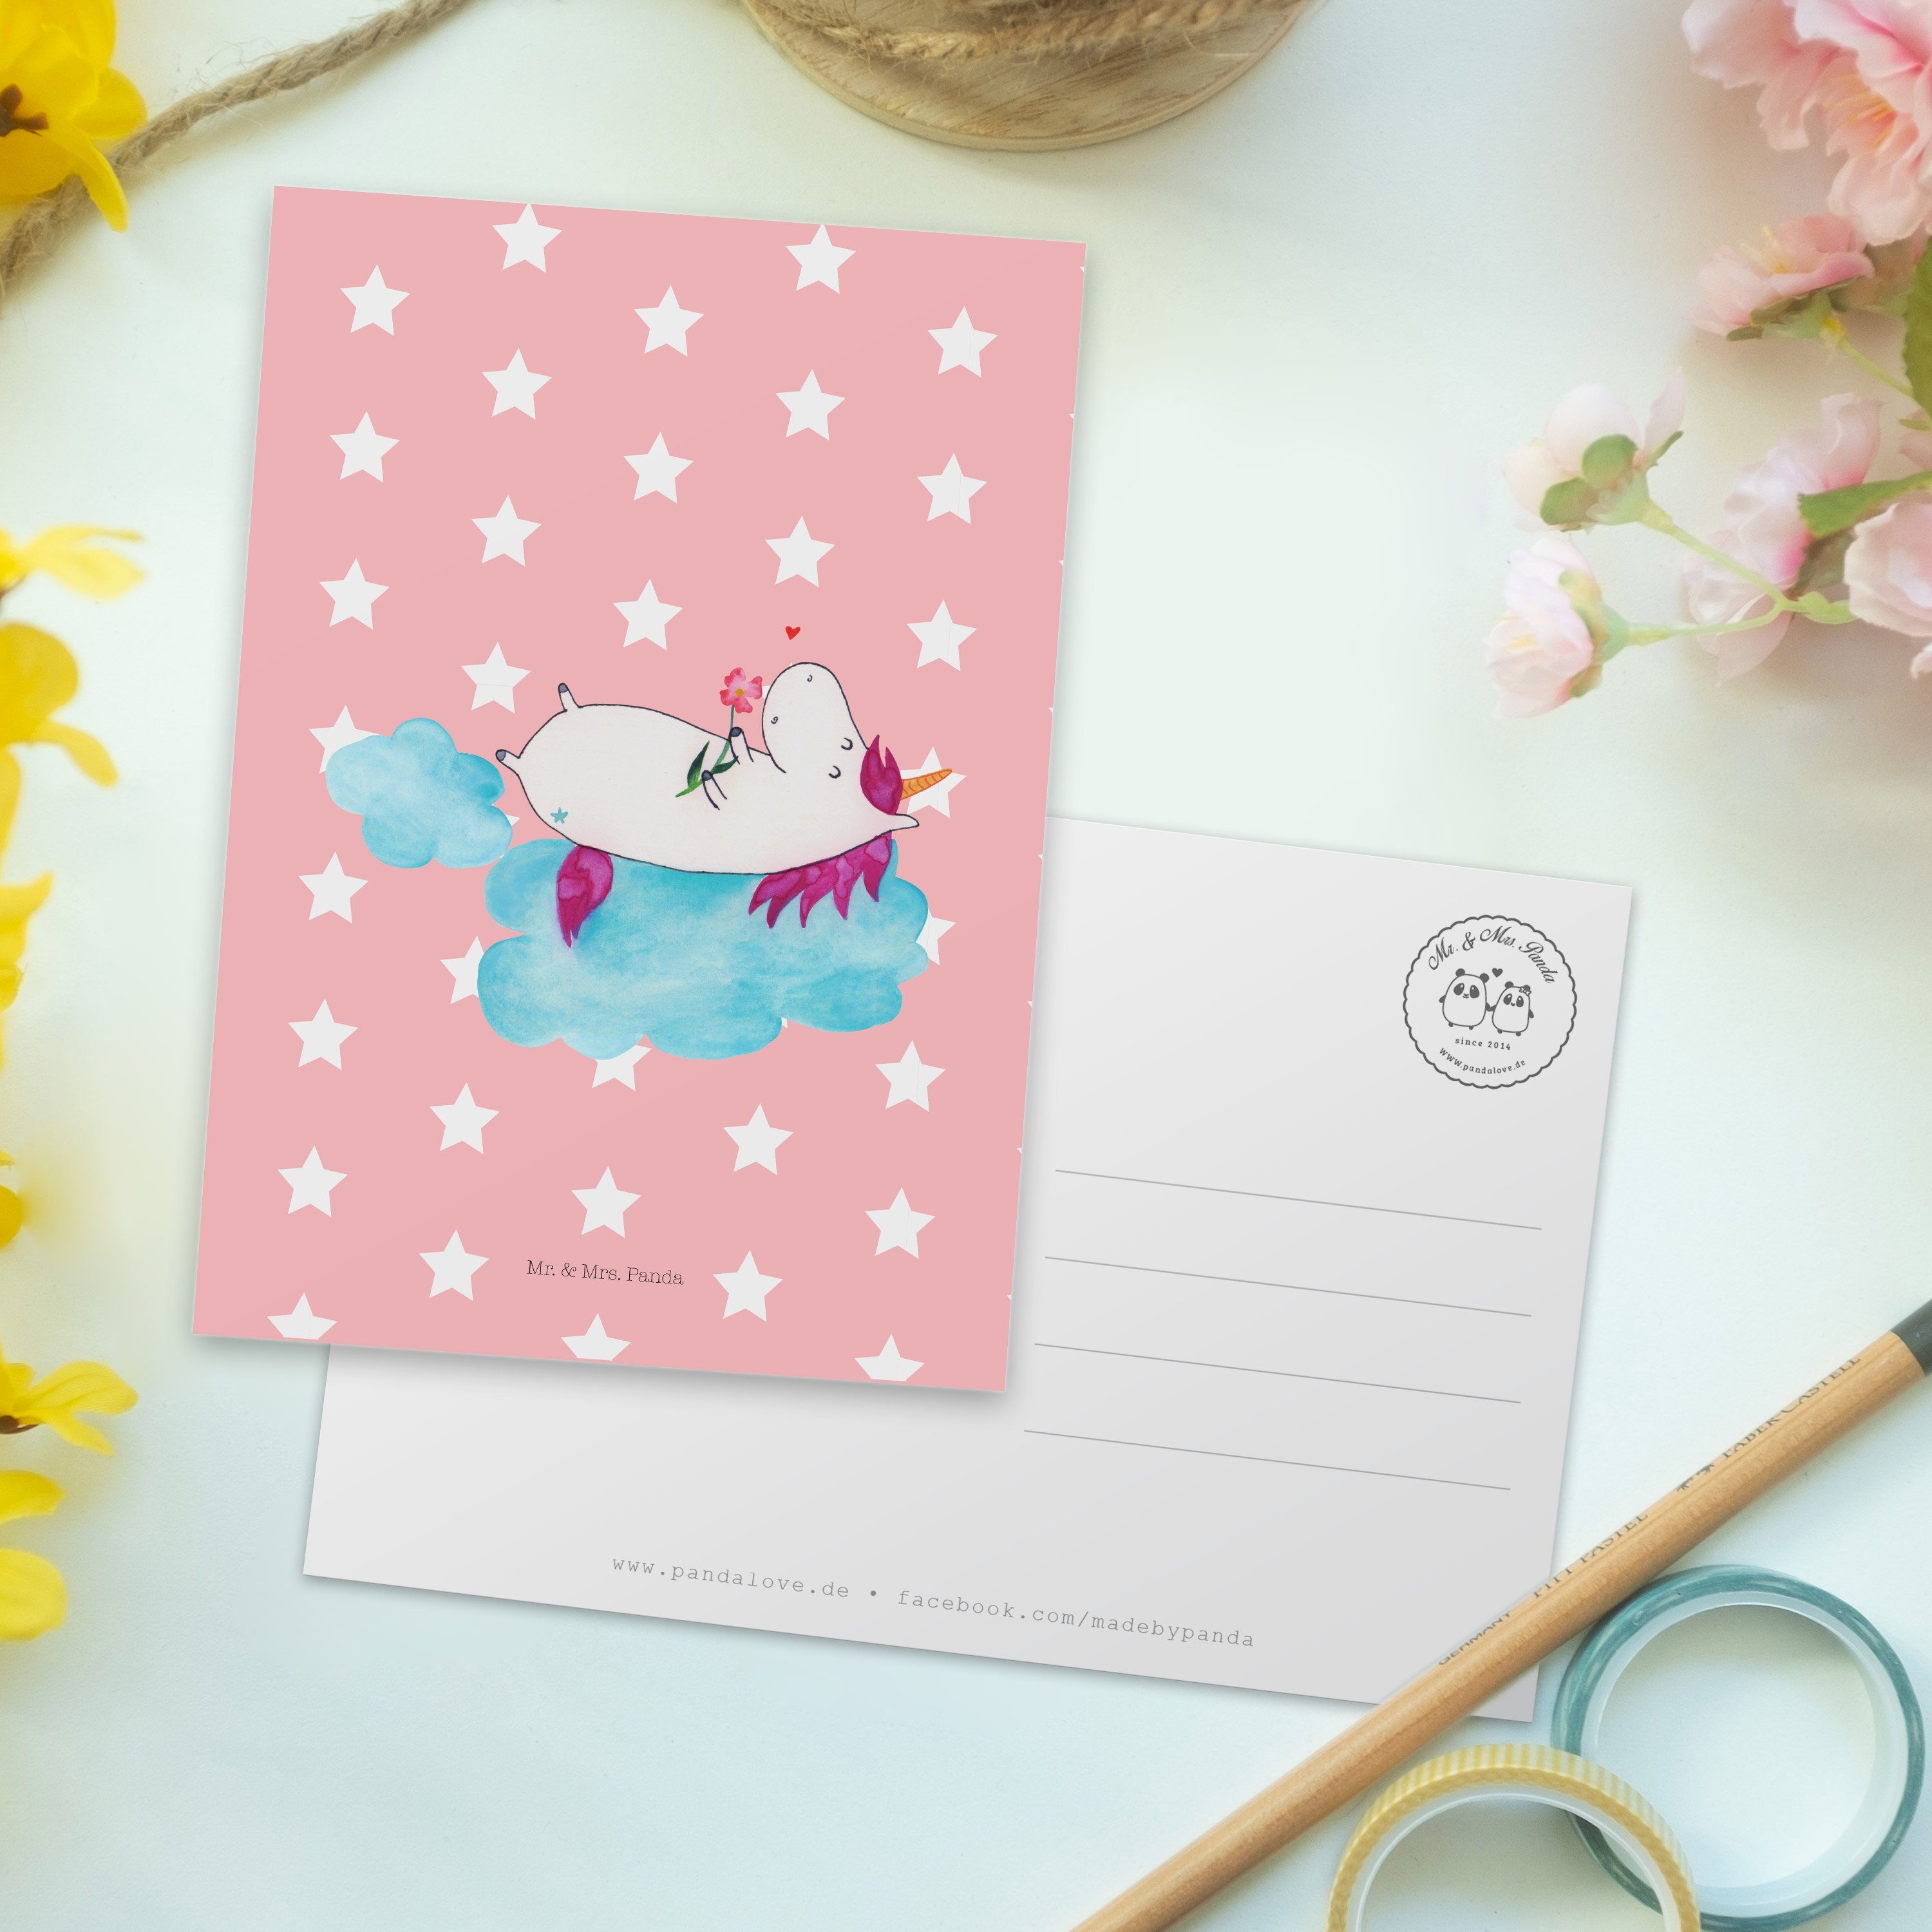 Mr. & Mrs. Panda Postkarte Rot Wolke - verliebt - Karte, auf Geschenkk Einhorn Pastell Geschenk